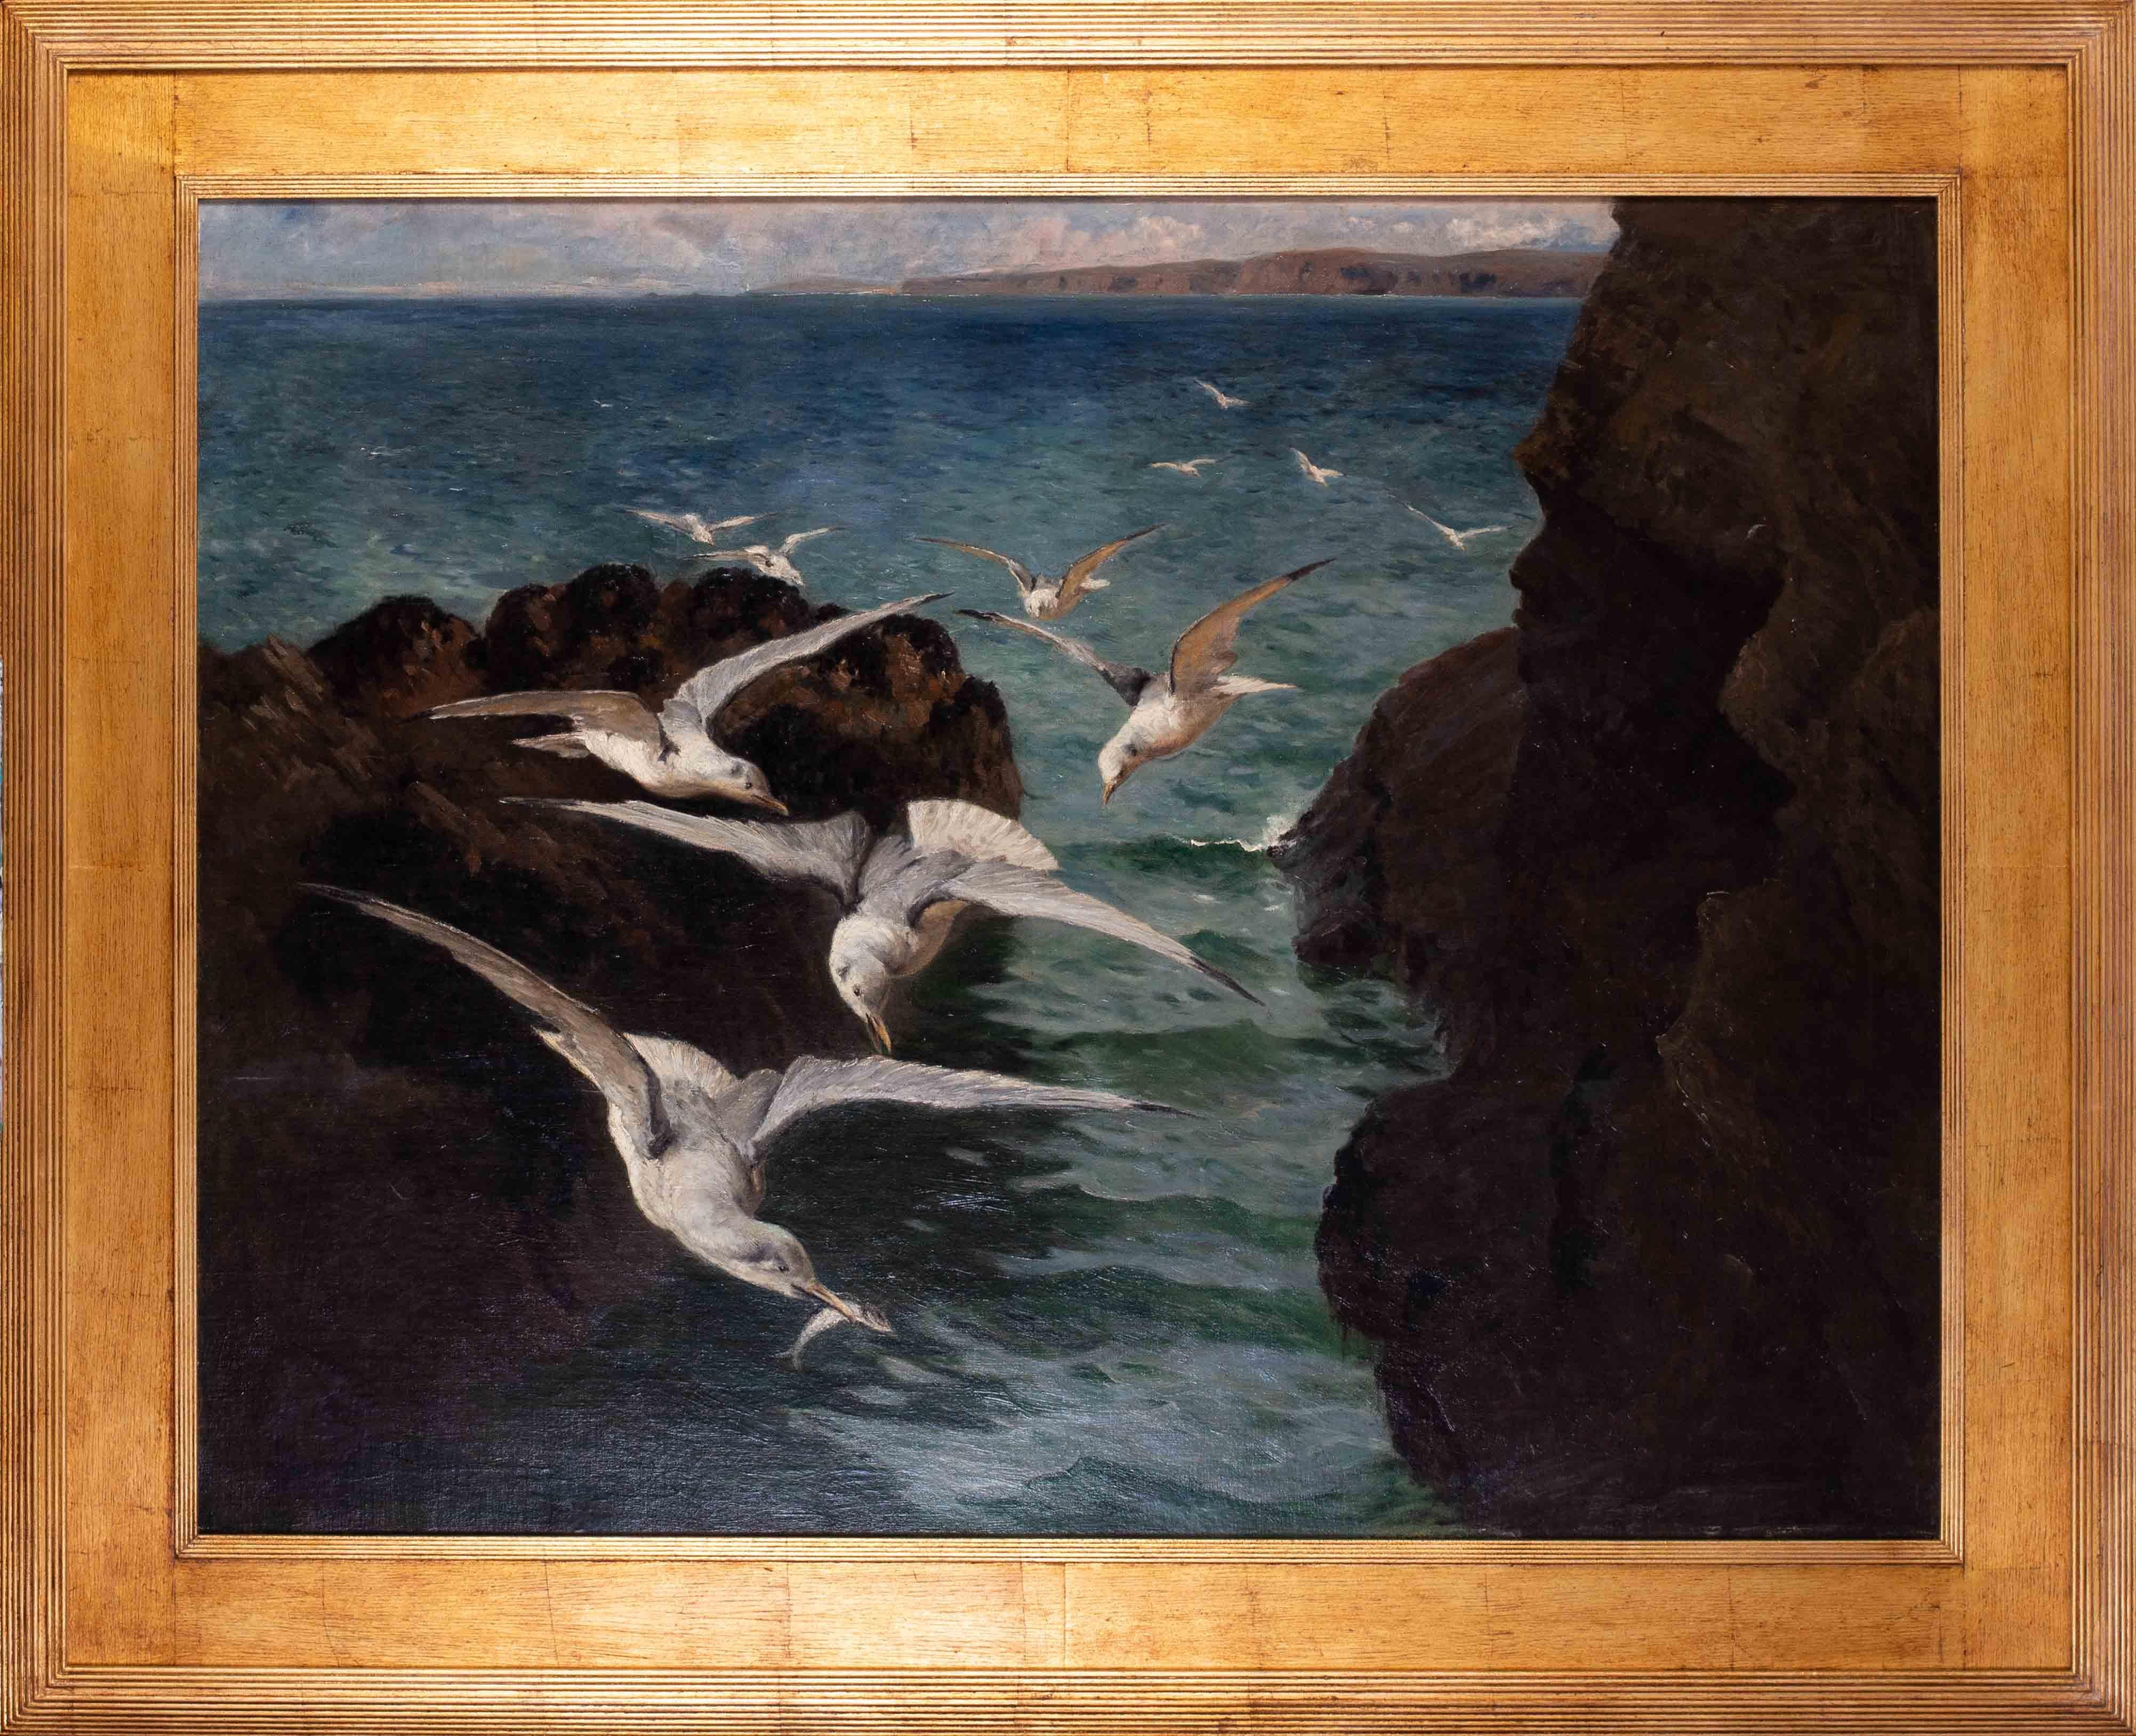 Grandes peintures à l'huile de Gulls à la baie de St. Ives, Cornouailles, par l'artiste britannique Titcomb